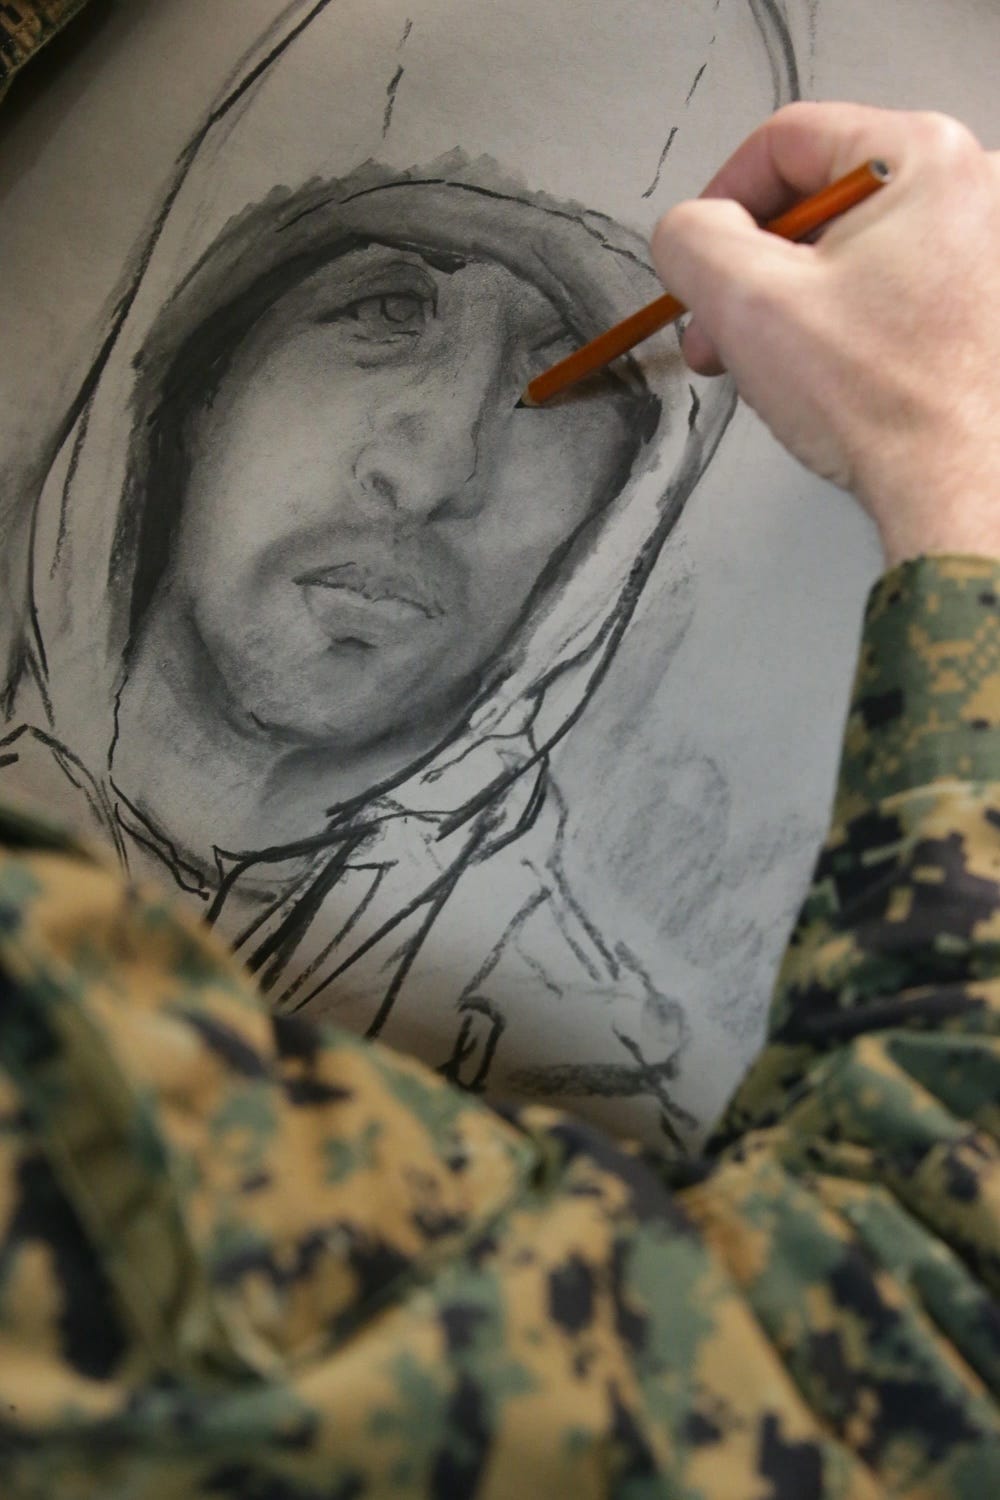 Maj. Michael Reynolds vom US-Marinekorps und ein Kampfkünstler stellen eine Zeichnung fertig